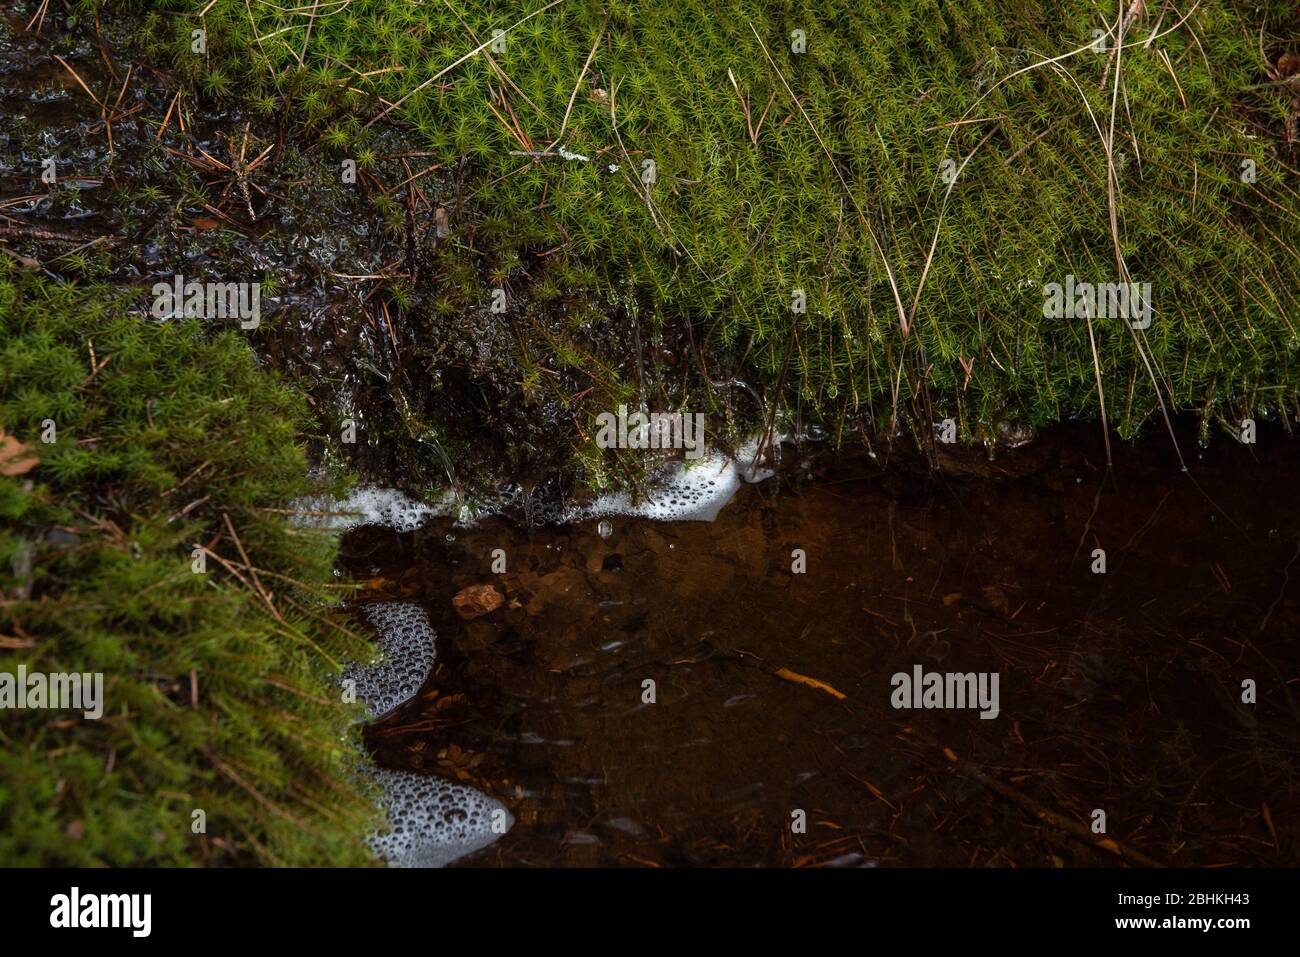 Schmelzwasser fließt vom Hügel in einem ruhigen Strom hinunter und fließt in eine Quelle, die mit weichem grünem Moos bedeckt ist. Stockfoto